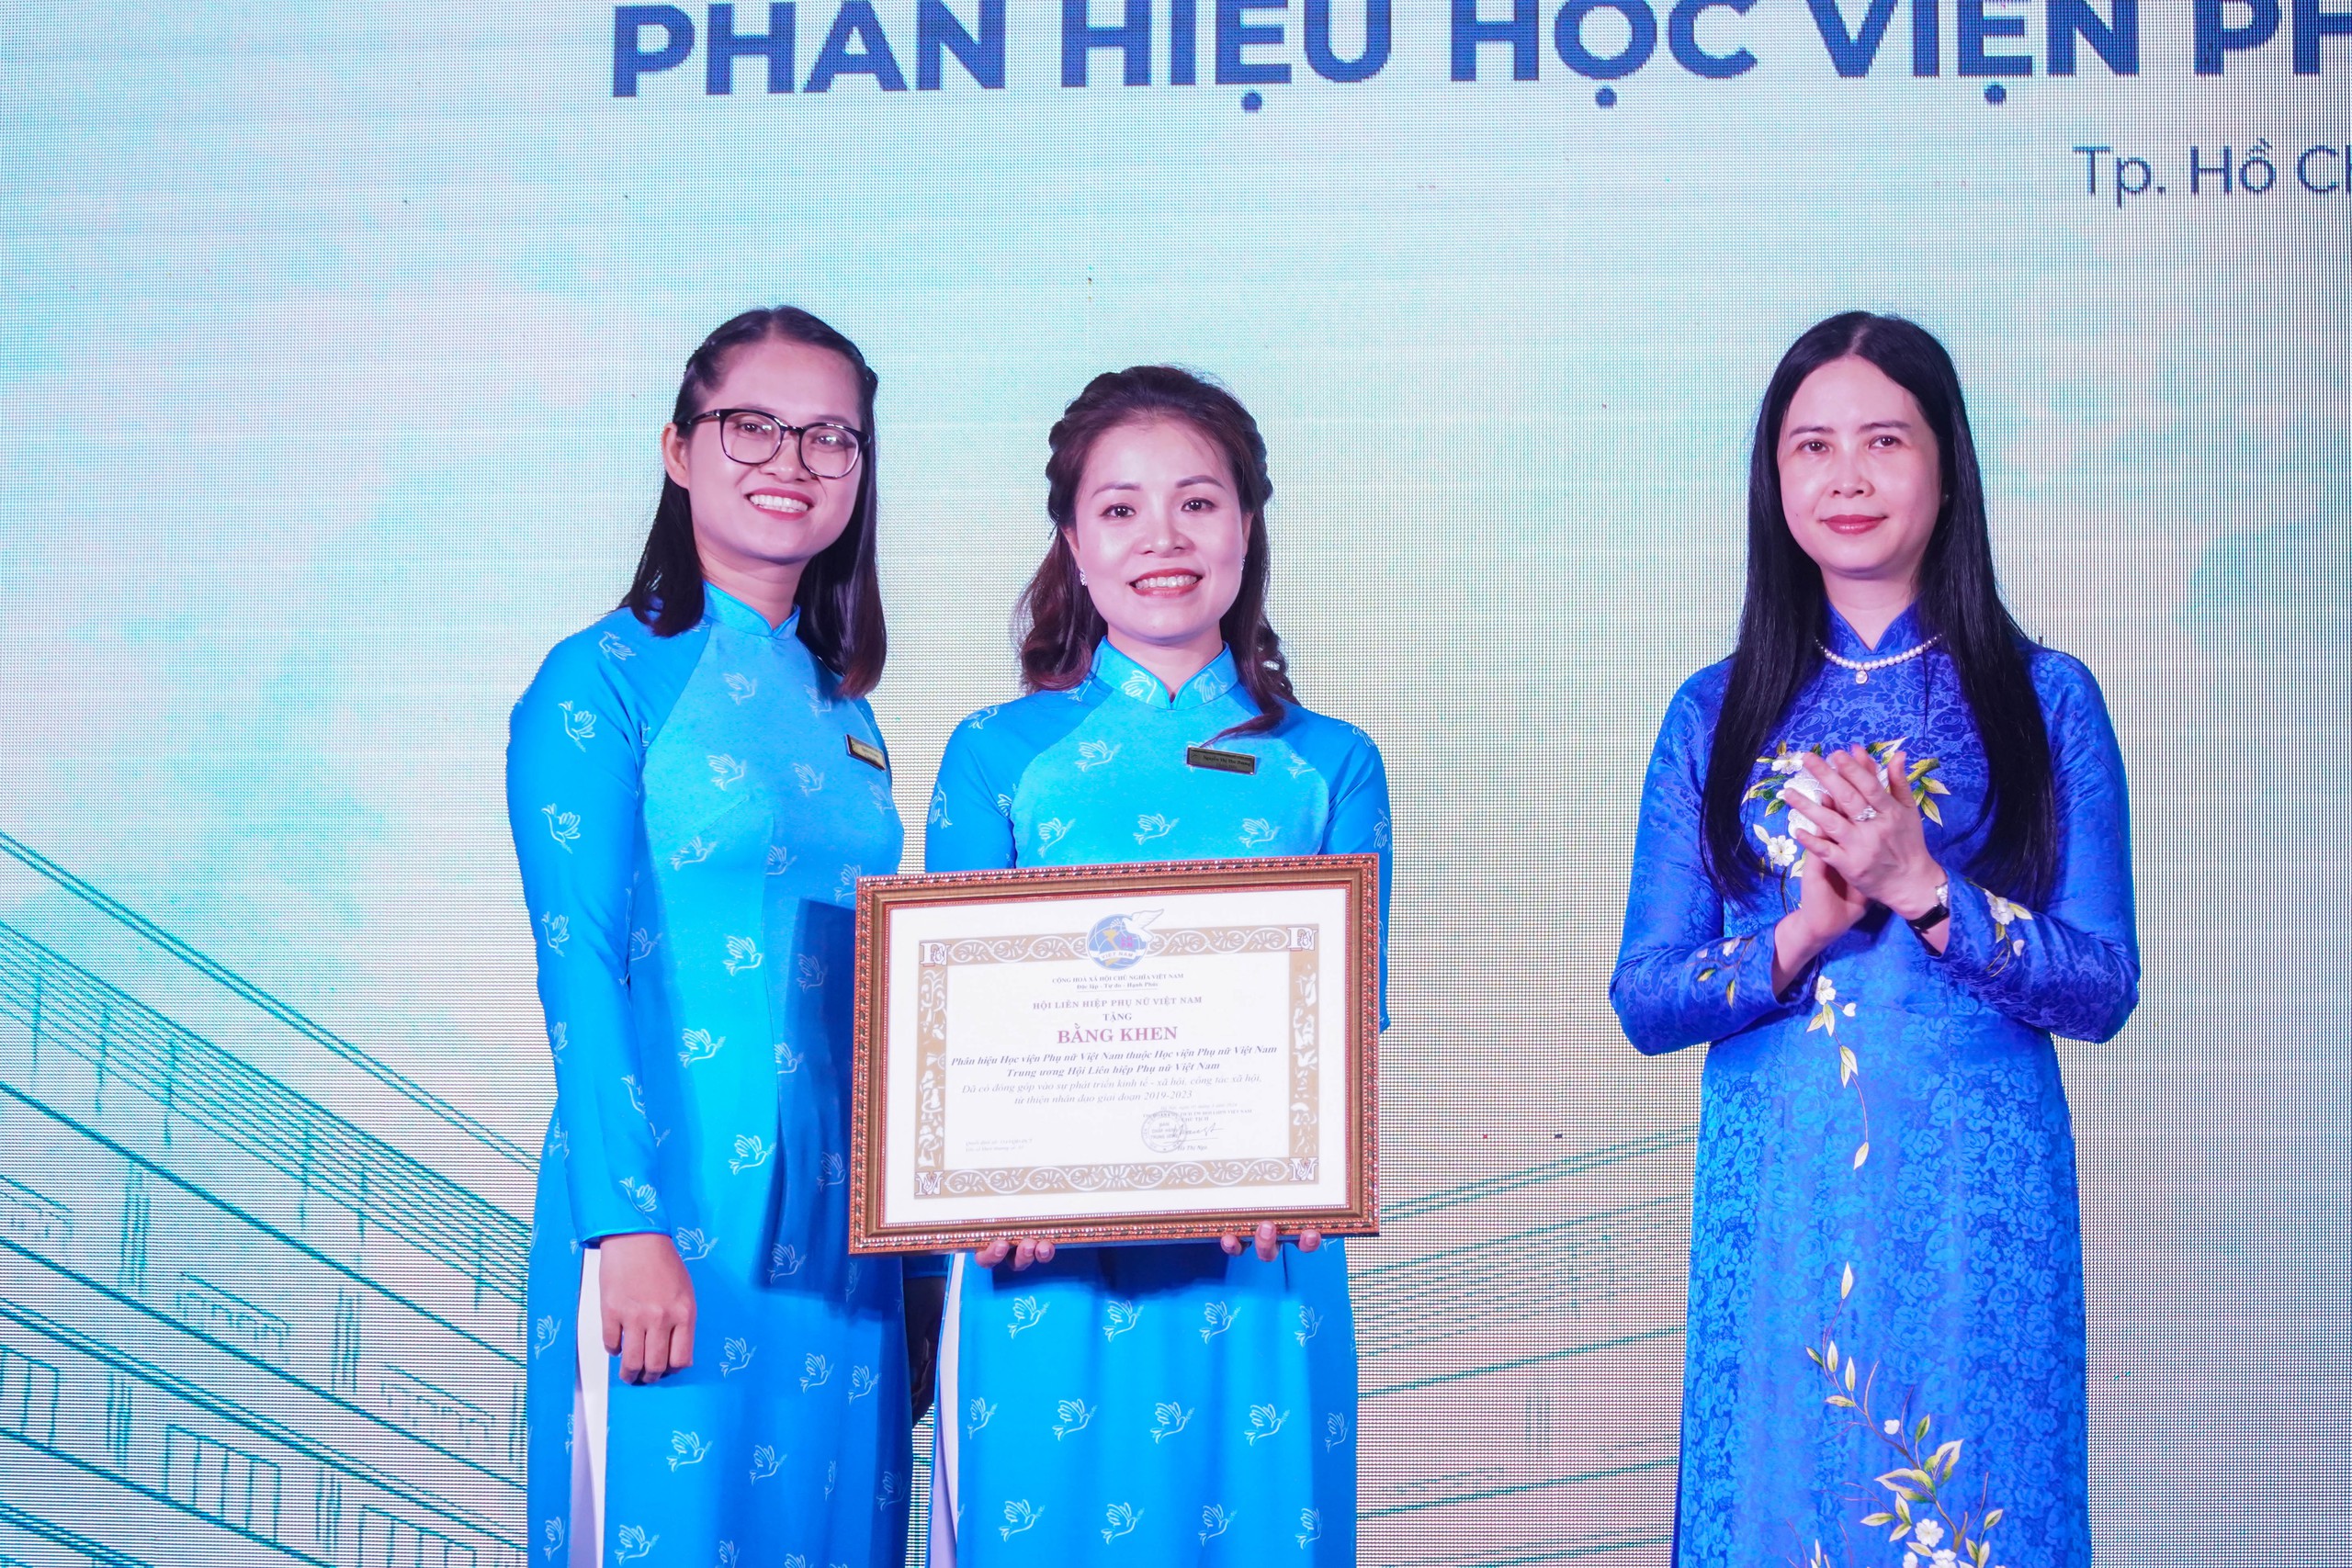 Mỹ đánh giá cao Phân hiệu Học viện Phụ nữ Việt Nam- Ảnh 8.